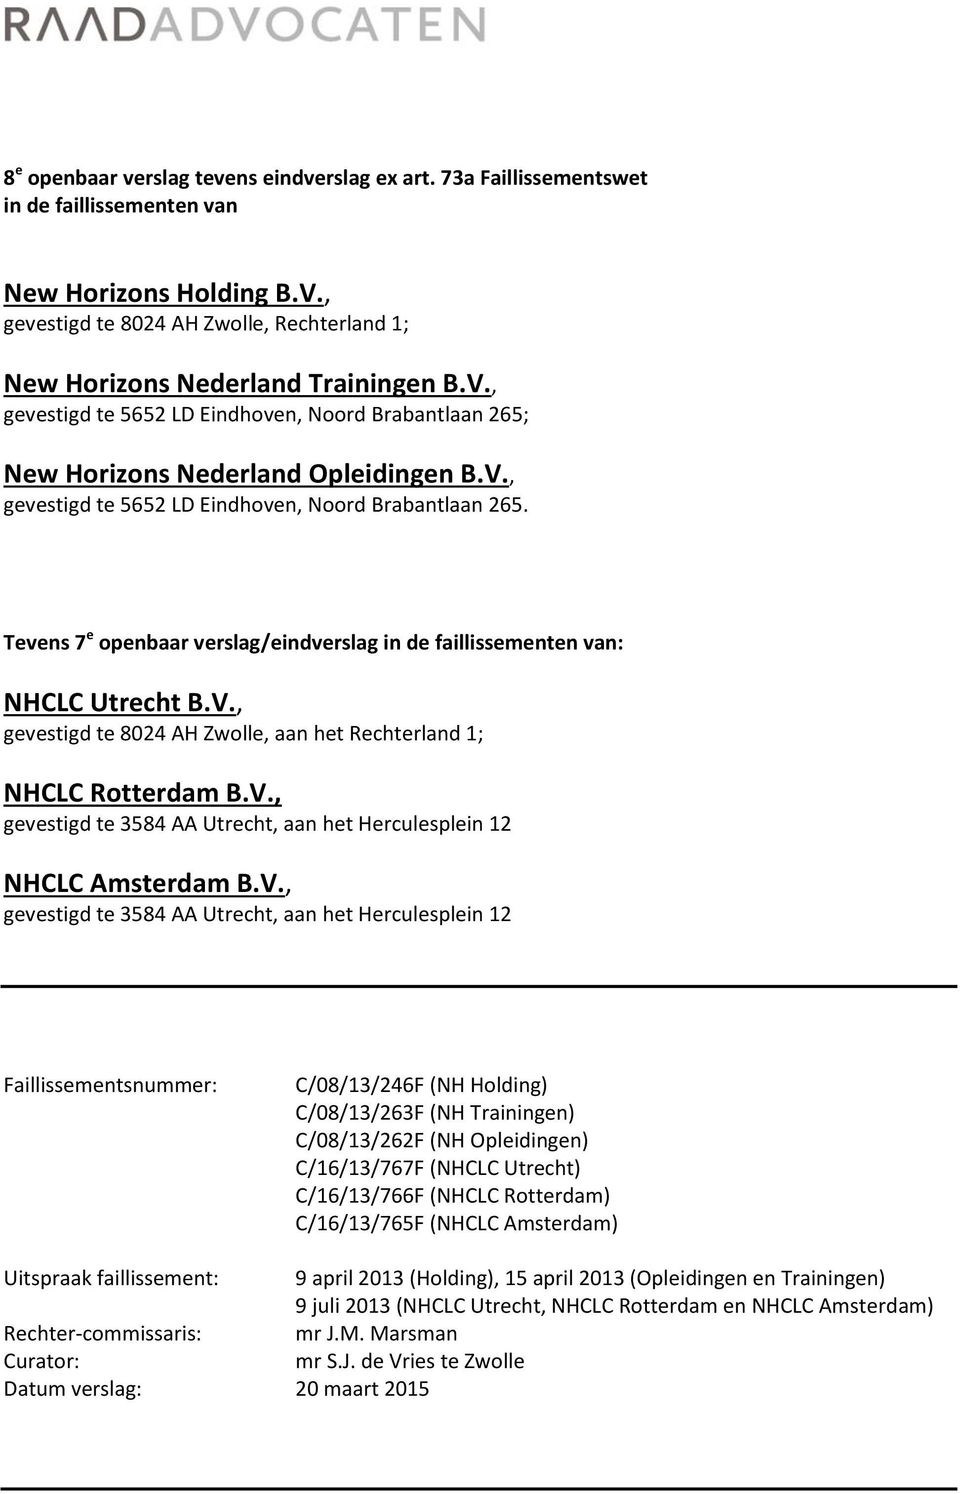 New Horizons Nederland Opleidingen B.V., gevestigd te 5652 LD Eindhoven, Noord Brabantlaan 265. Tevens 7 e openbaar verslag/eindverslag in de faillissementen van: NHCLC Utrecht B.V., gevestigd te 8024 AH Zwolle, aan het Rechterland 1; NHCLC Rotterdam B.